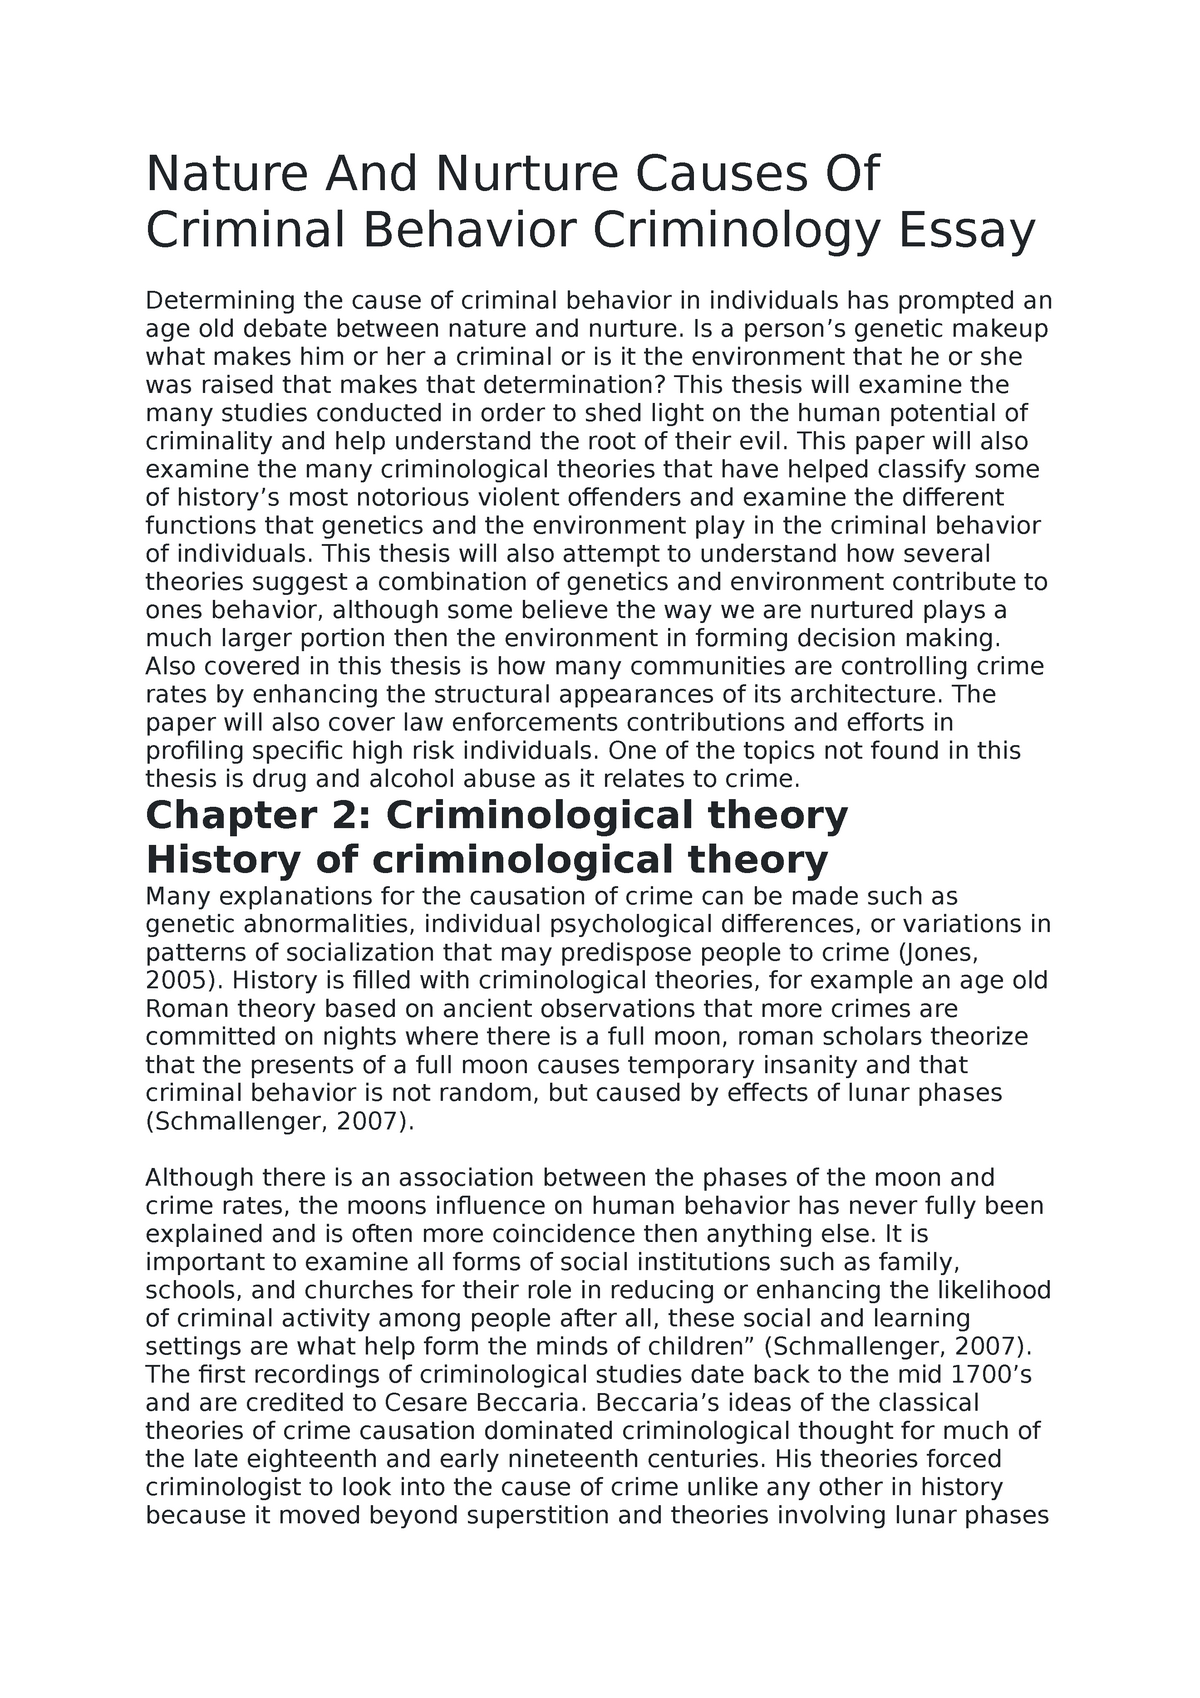 conclusion criminology essay